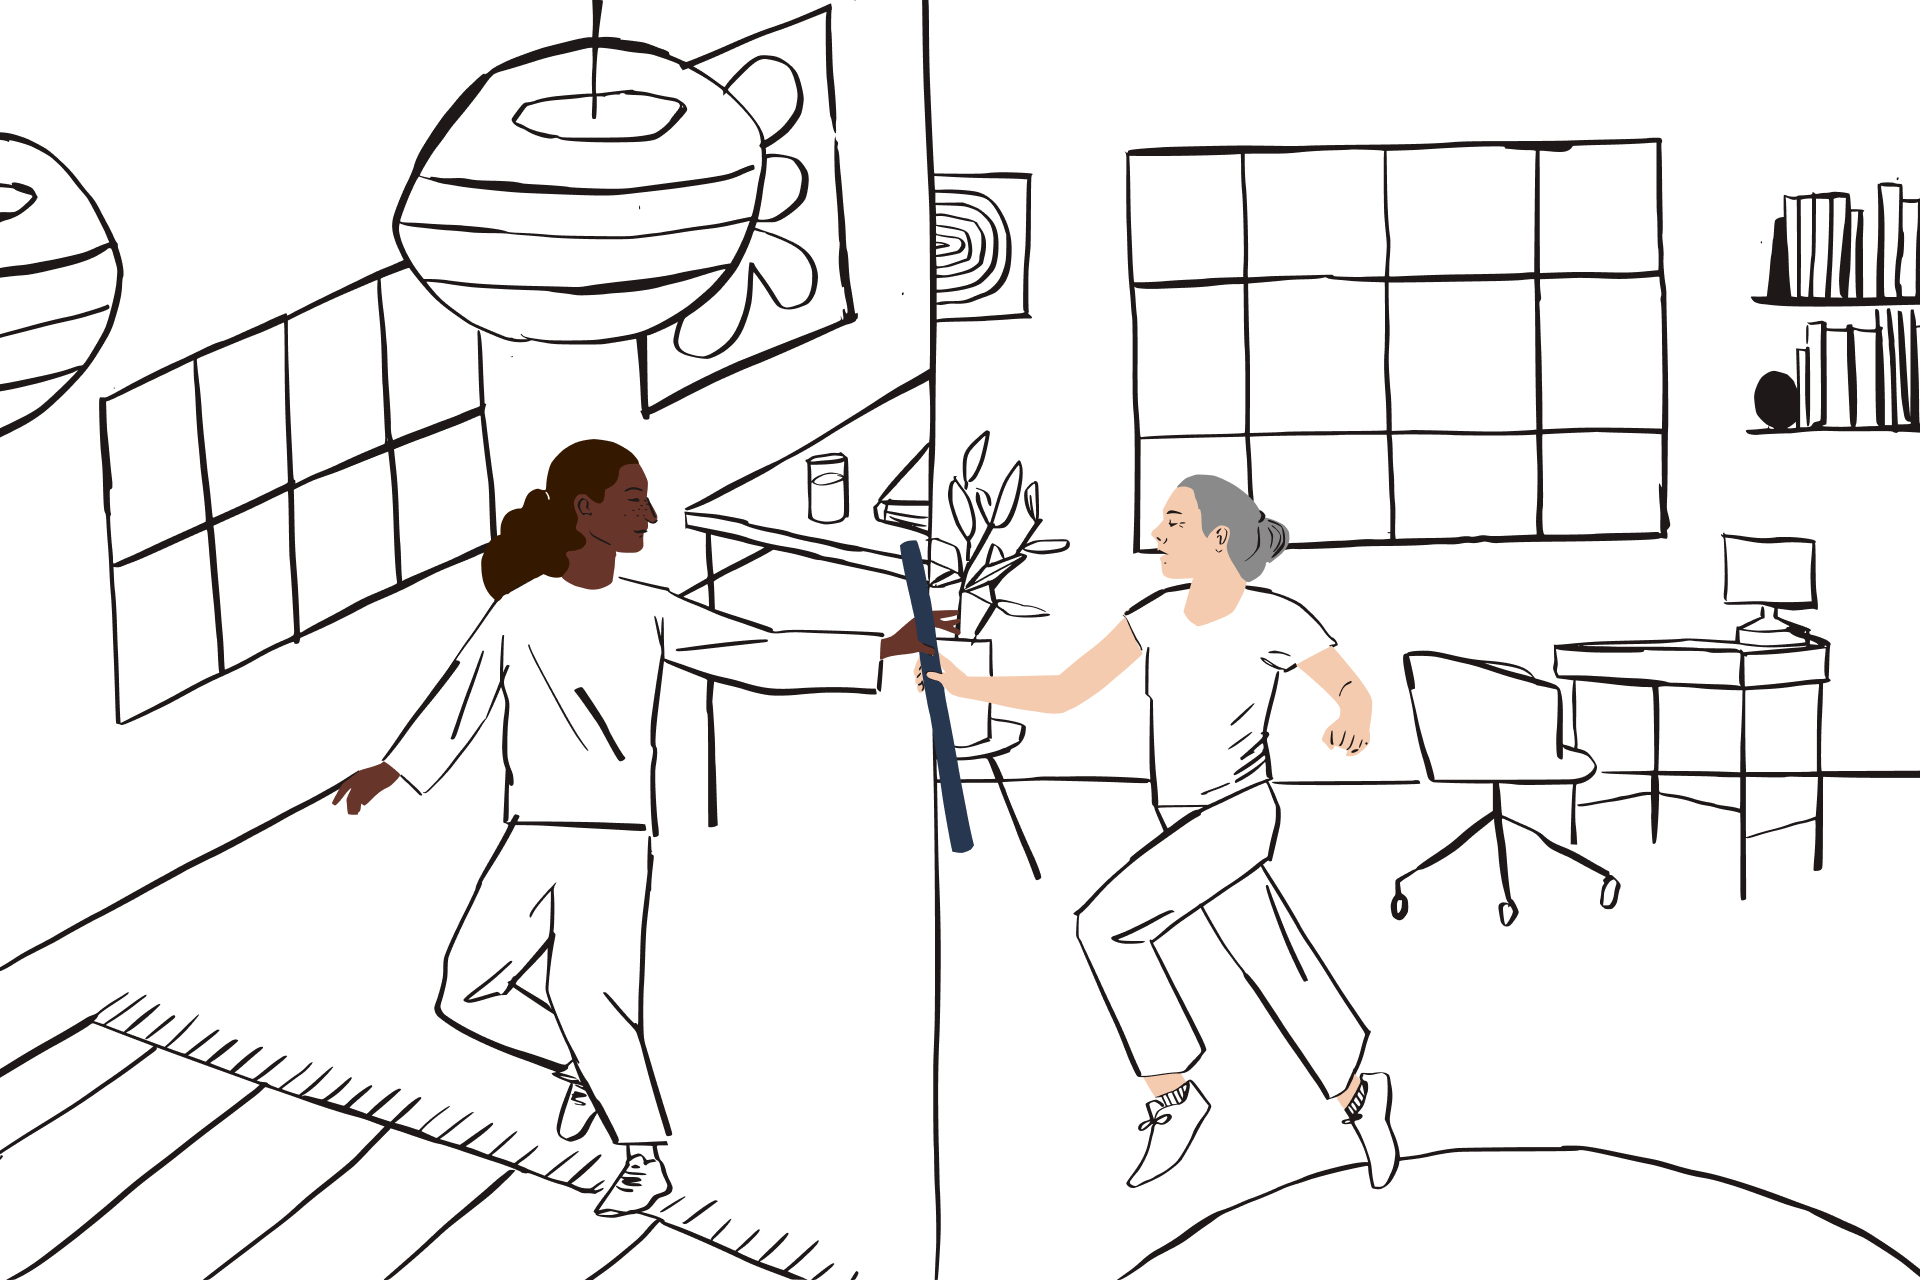 线条插画显示两幅画面：家庭办公室画面的一个人将一根接力棒传递给另一个空间画面里的另一人